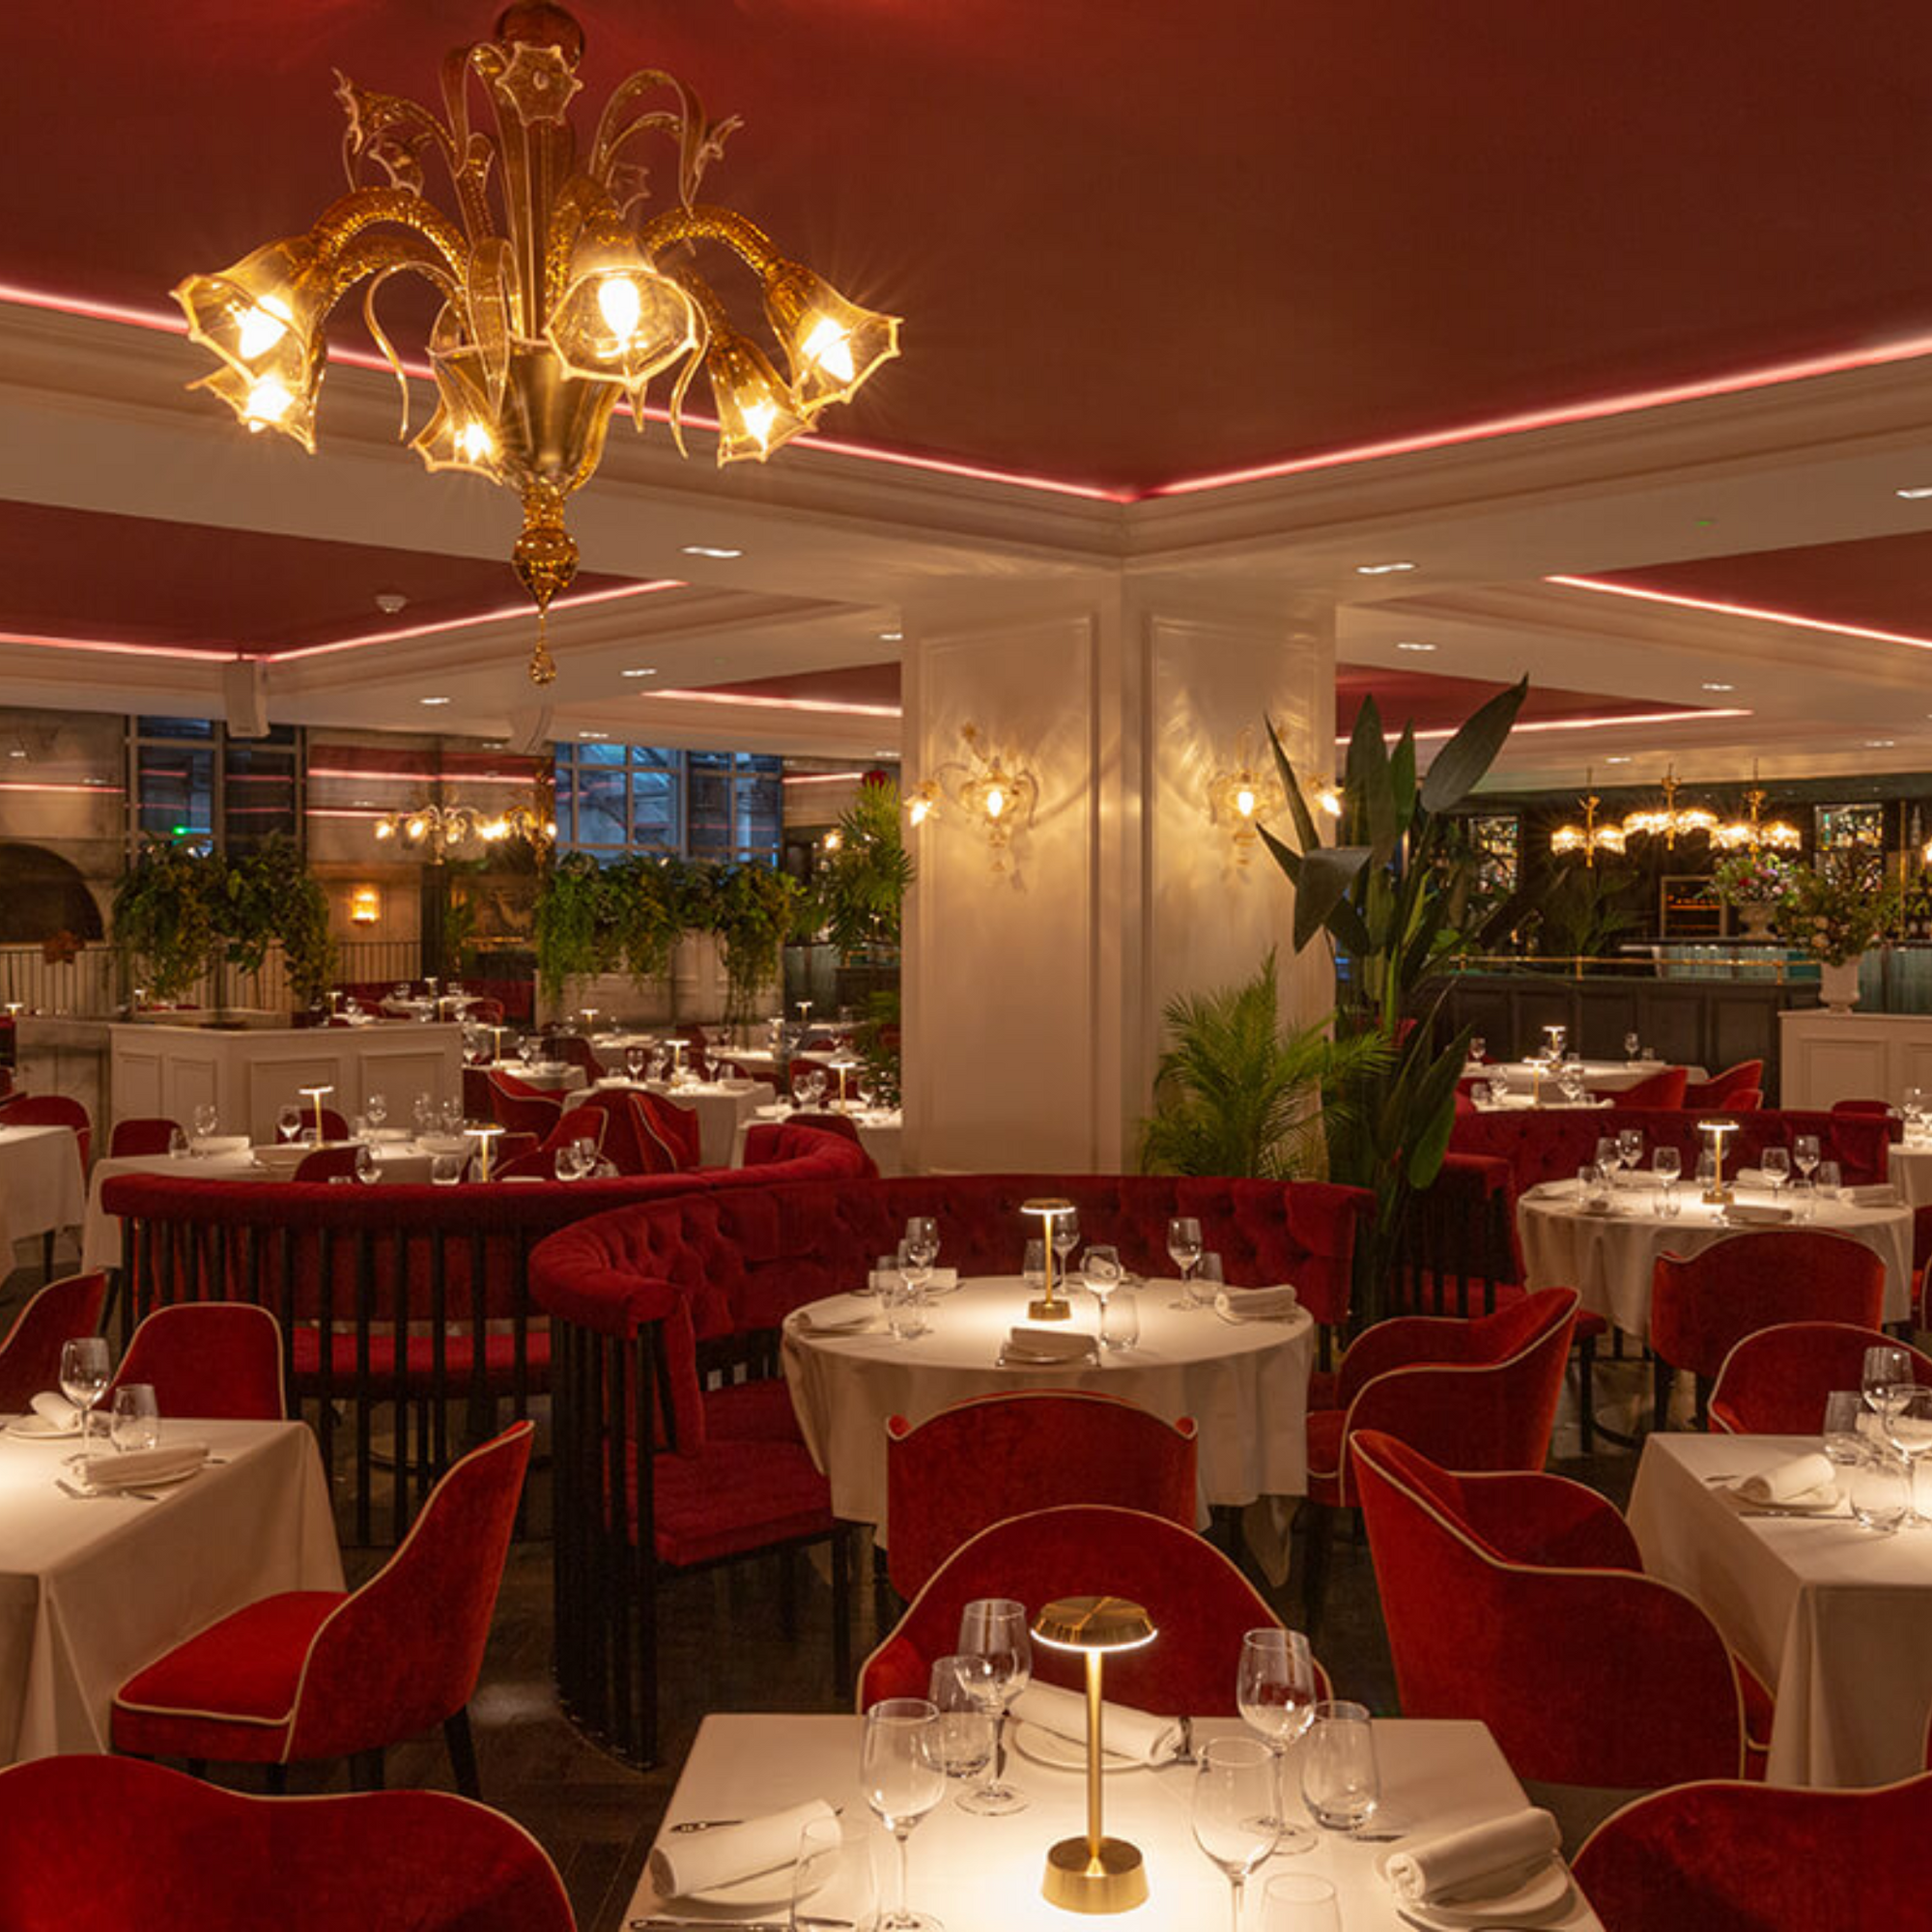 amber murano glass chandelier in restaurant - bespoke luxury lightig